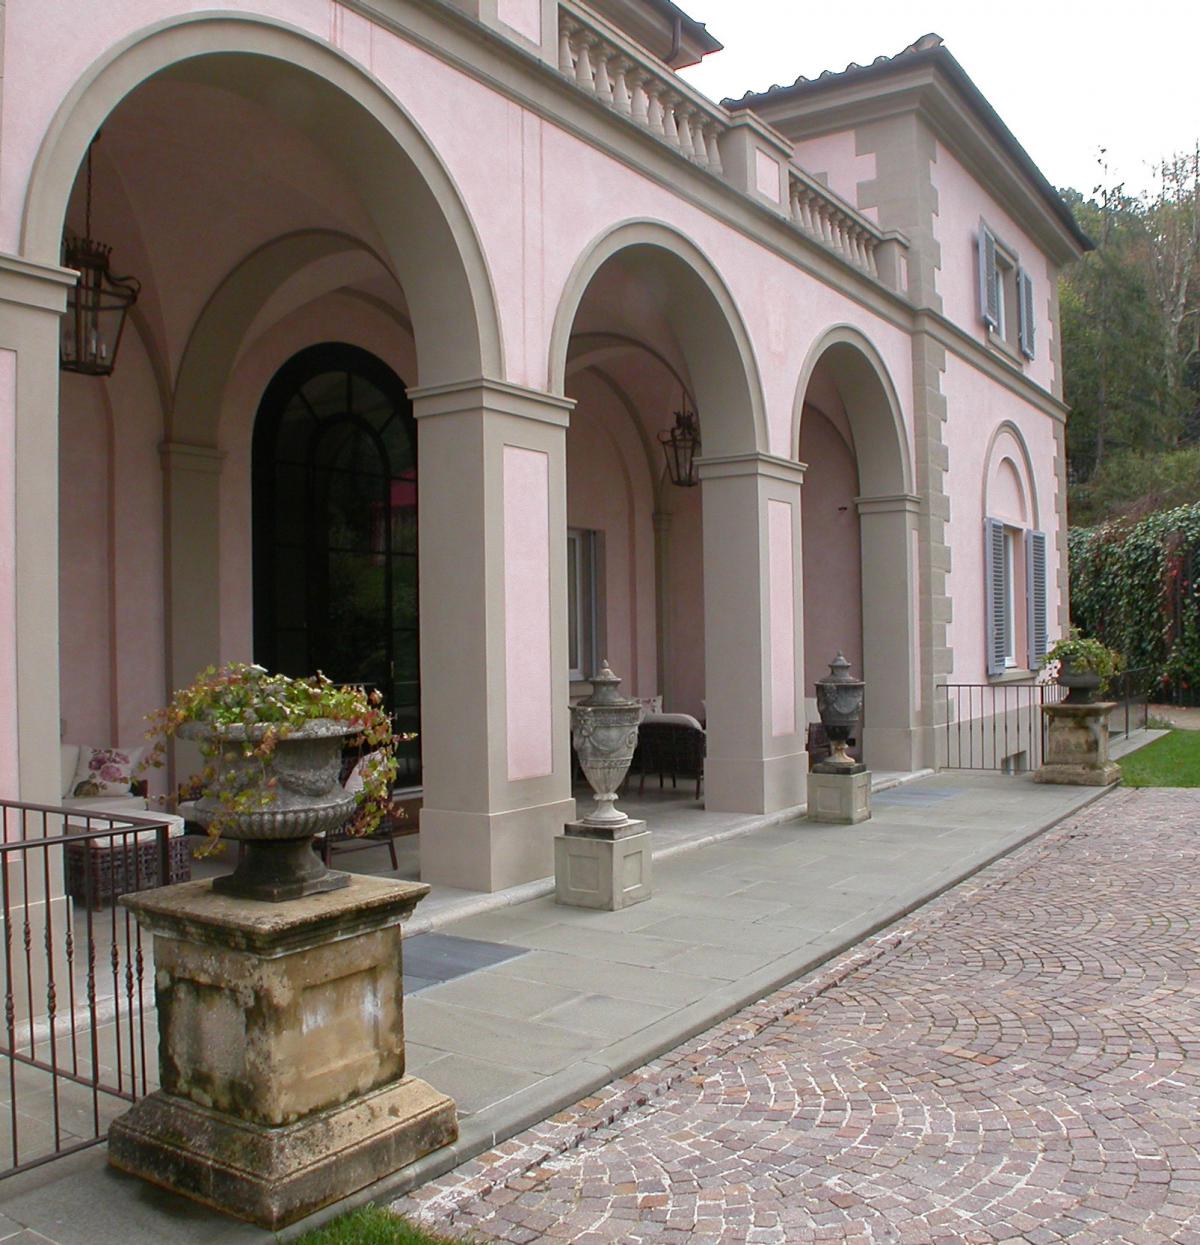 Pavimentazione di Pietra Macigno di Greve fiammata e anticata - Villino al Grand Hotel Villa Cora, Firenze